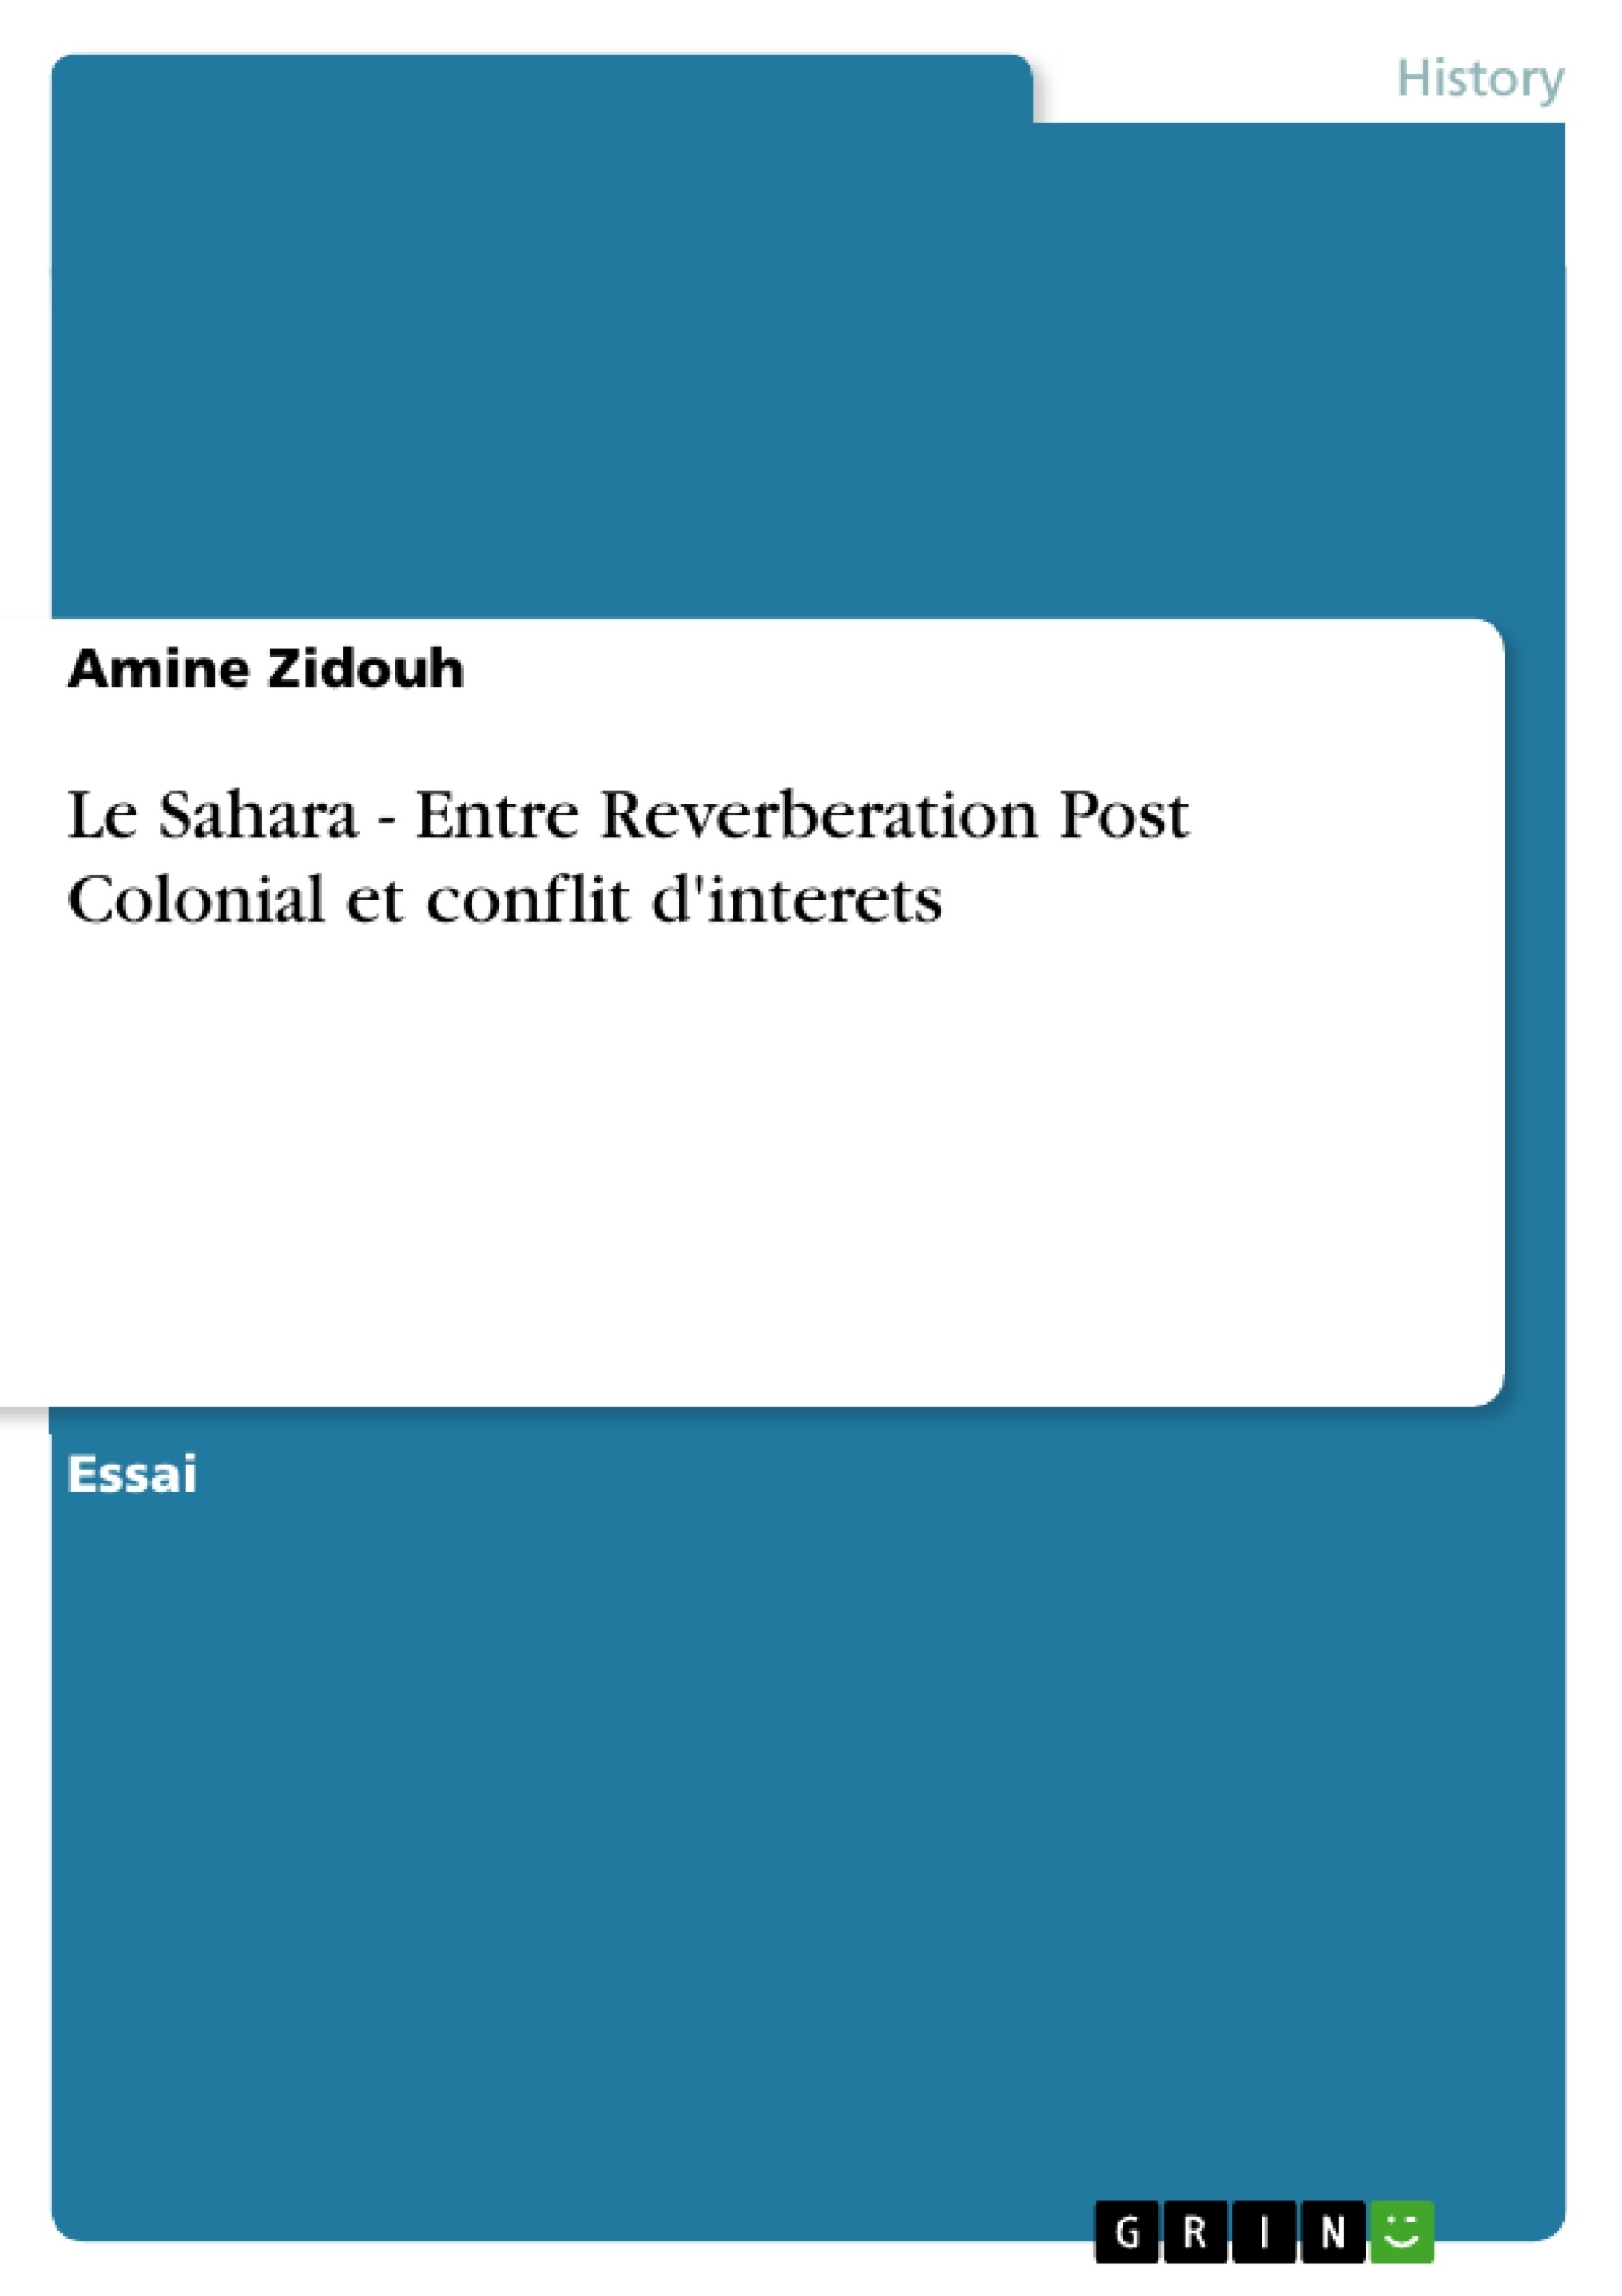 Titre: Le Sahara - Entre Reverberation Post Colonial et conflit d'interets